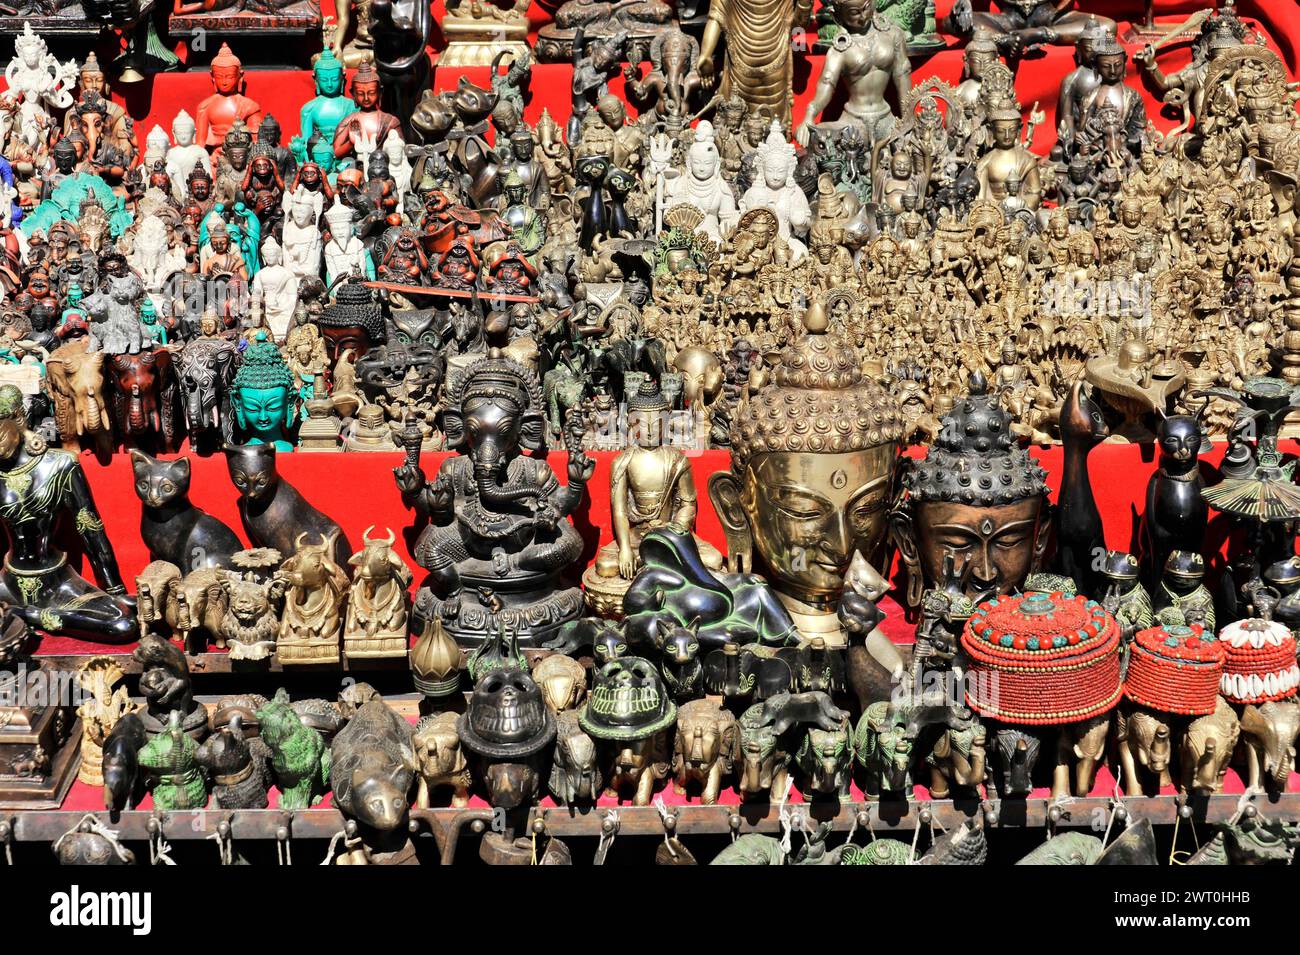 Eine große Auswahl an Figuren und Souvenirs an einem Stand, Kathmandu Valley, Kathmandu, Nepal Stockfoto